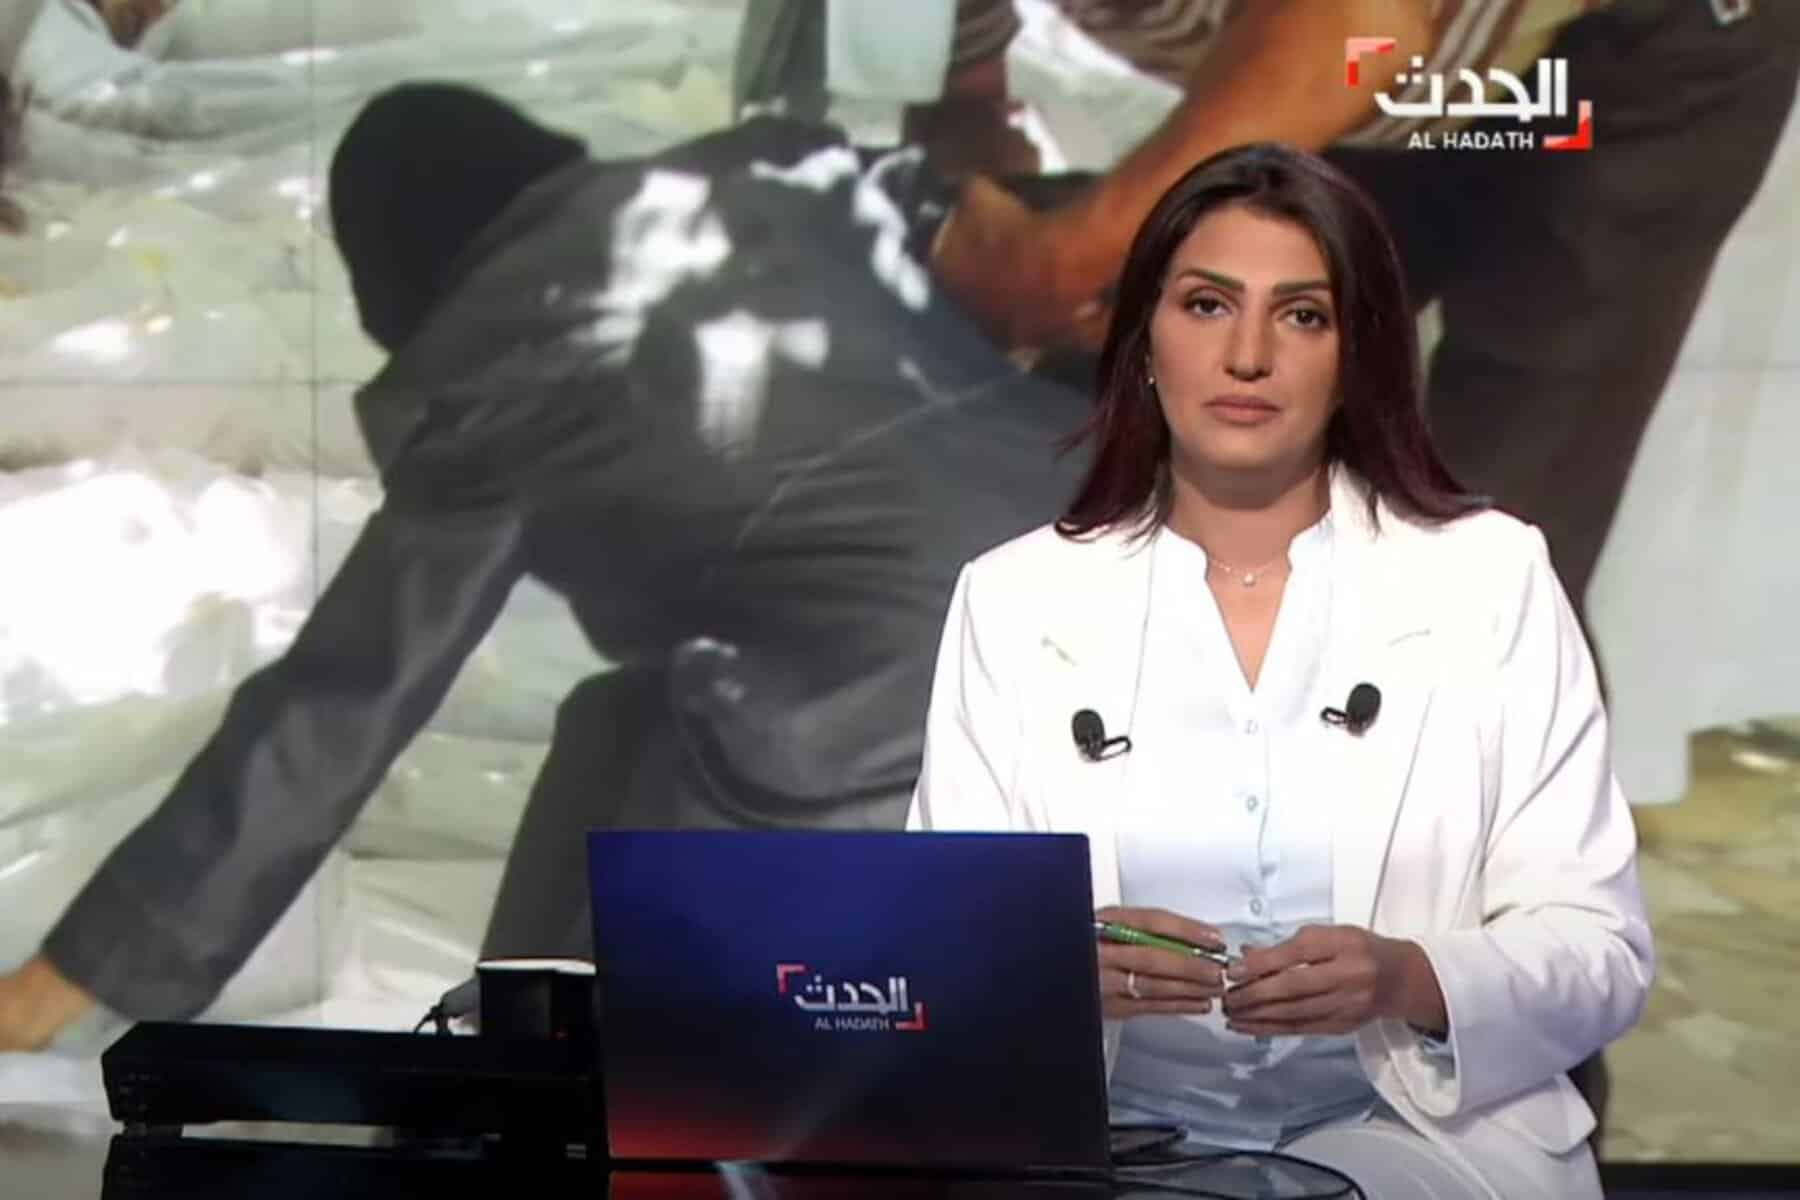  alarabtrend.com مذيعة قناة العربية الحدث 